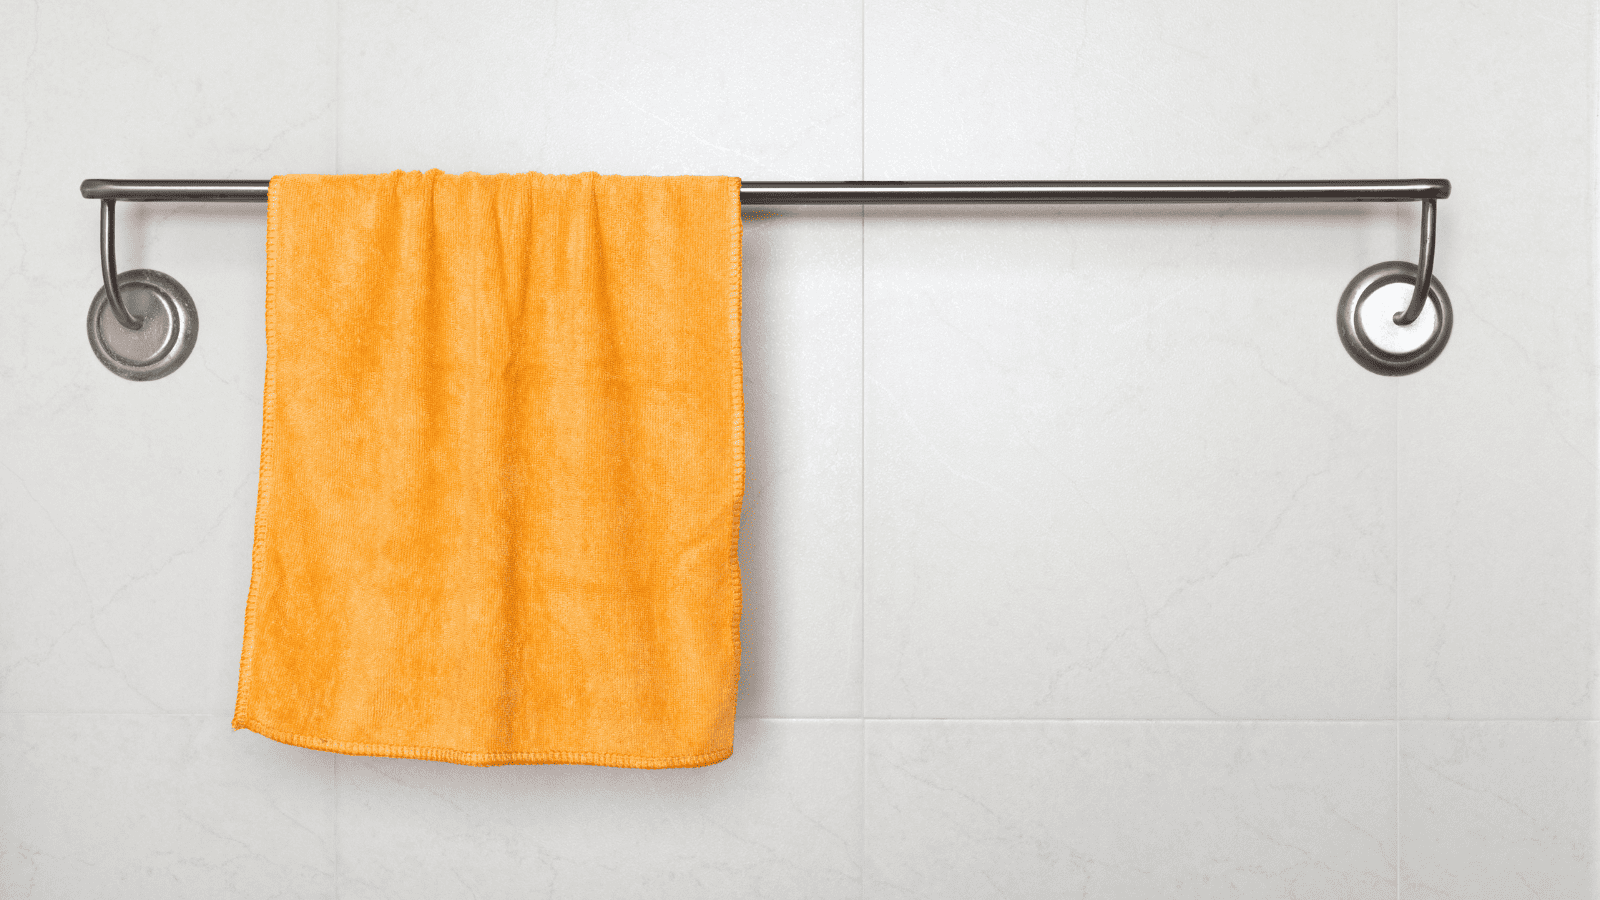 Microfiber towel hanging on rack